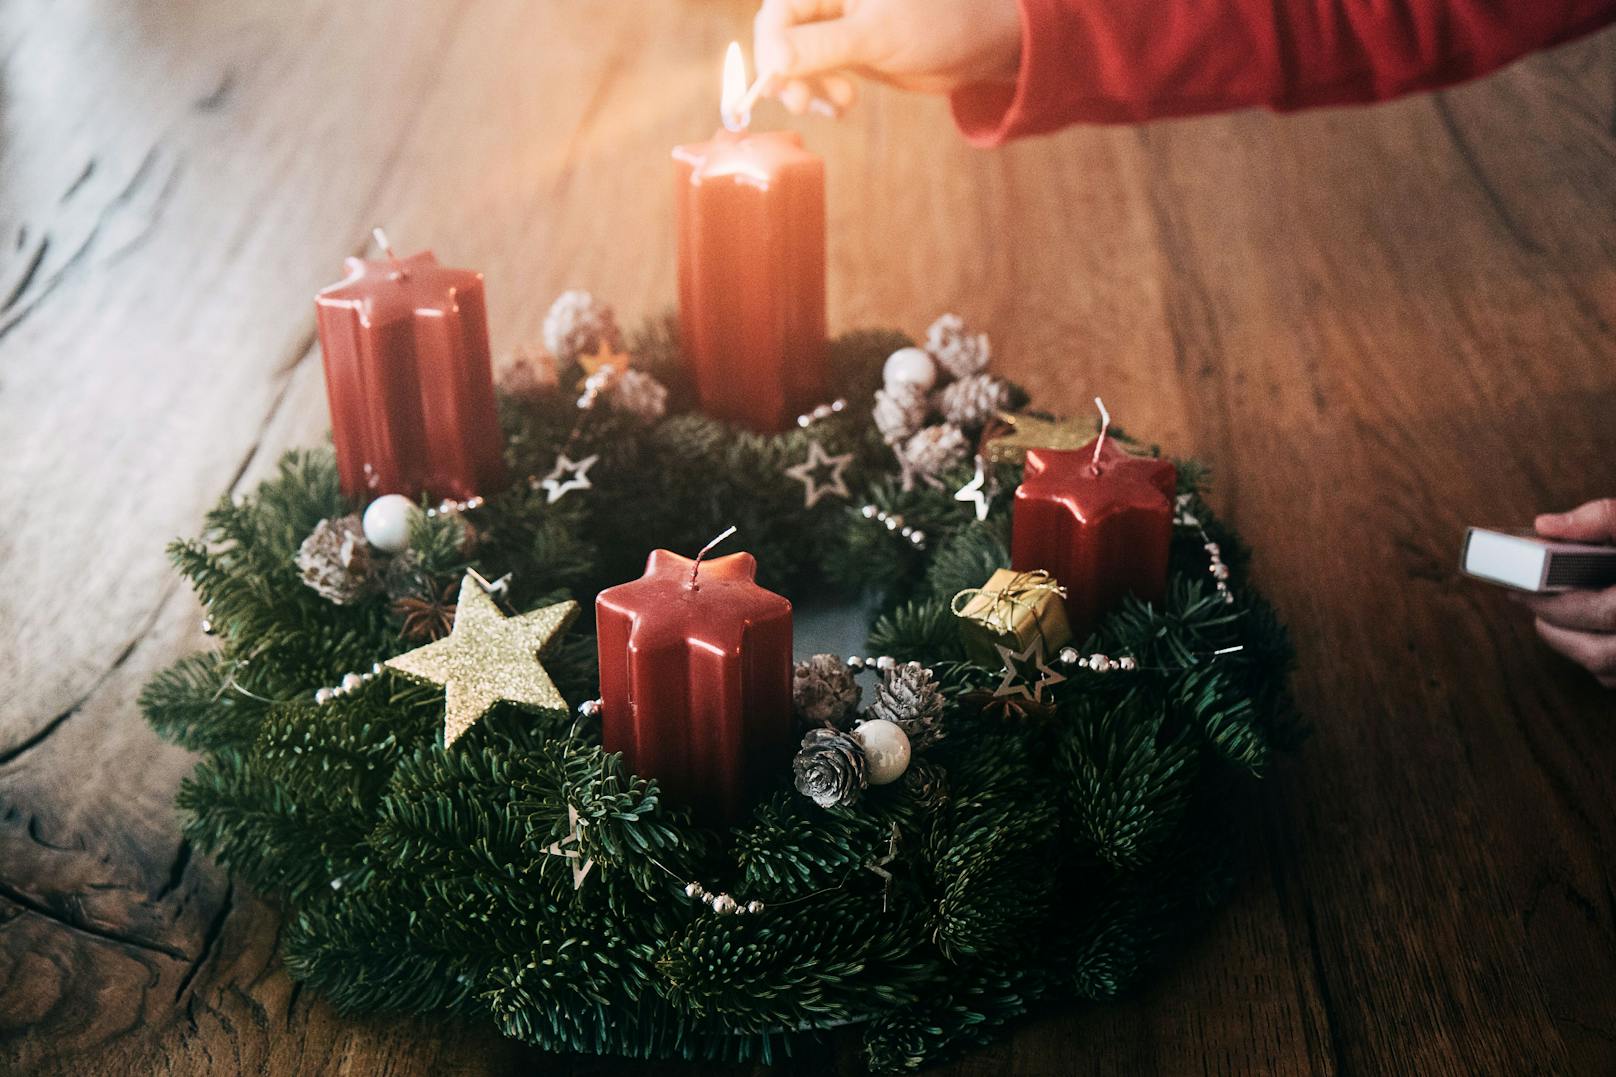 Der Klassiker kommt niemals aus der Mode: Adventkranz aus Tannenzweigen mit vier Kerzen gibt es derzeit so ziemlich überall. Im Supermarkt genauso, wie auf den Weihnachtsmärkten.